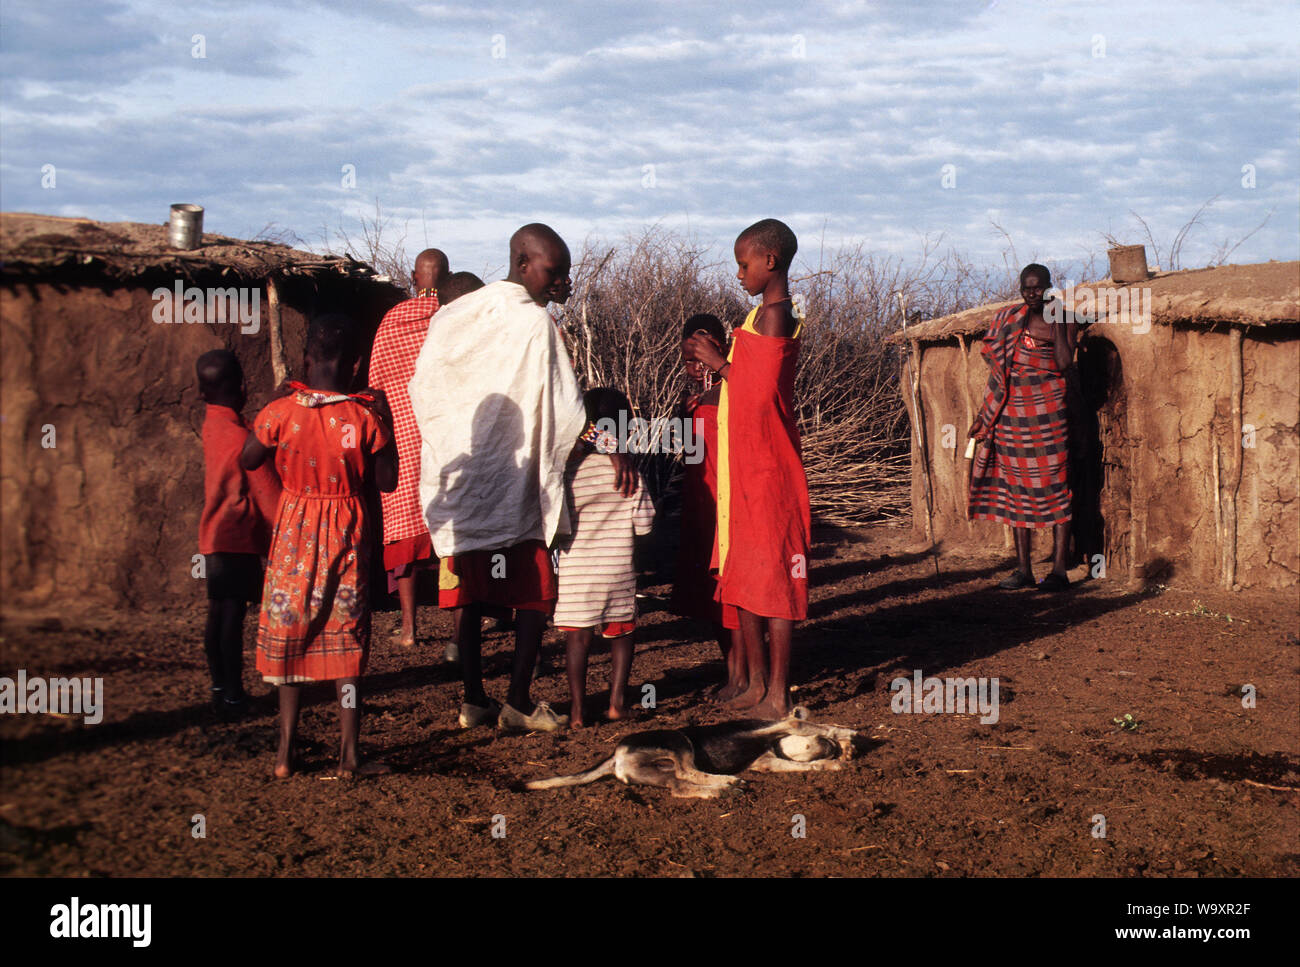 D'une tribu Masai à leur manyatta. Masais sont peut-être le plus célèbre de tous les tribus africaines, Masai Mara, Kenya Banque D'Images